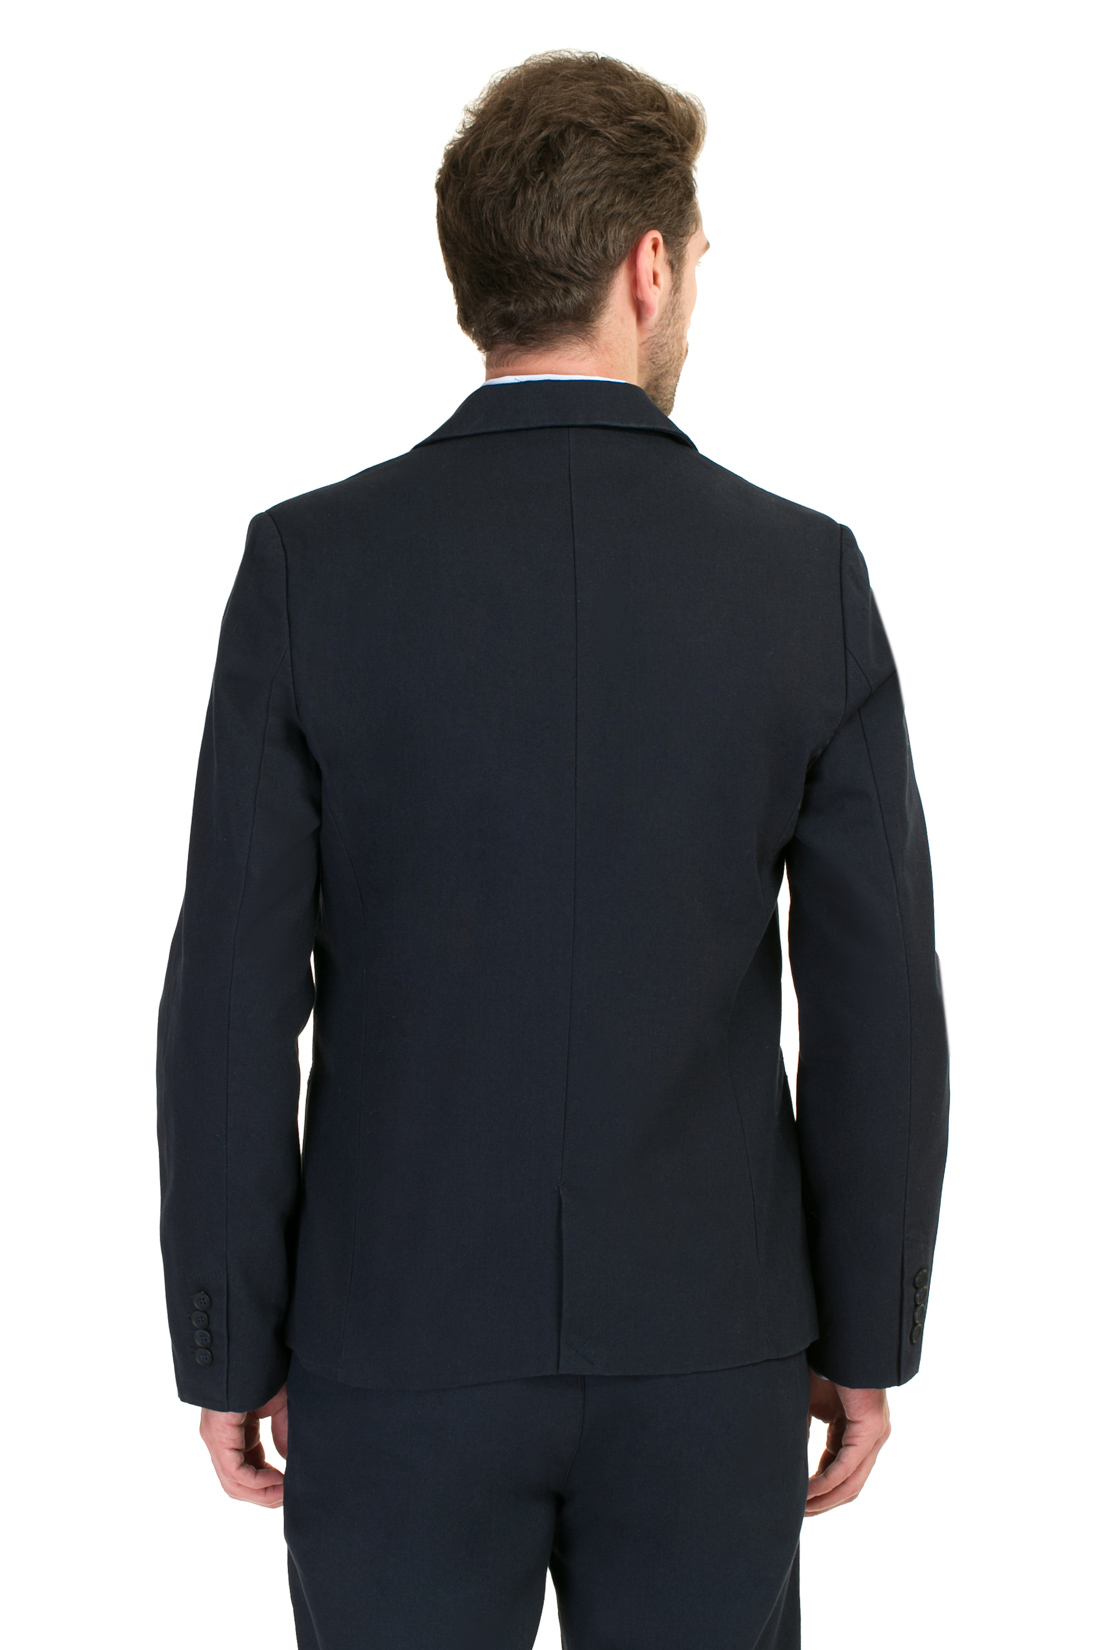 Деловой пиджак (арт. baon B627001), размер XXL, цвет синий Деловой пиджак (арт. baon B627001) - фото 2